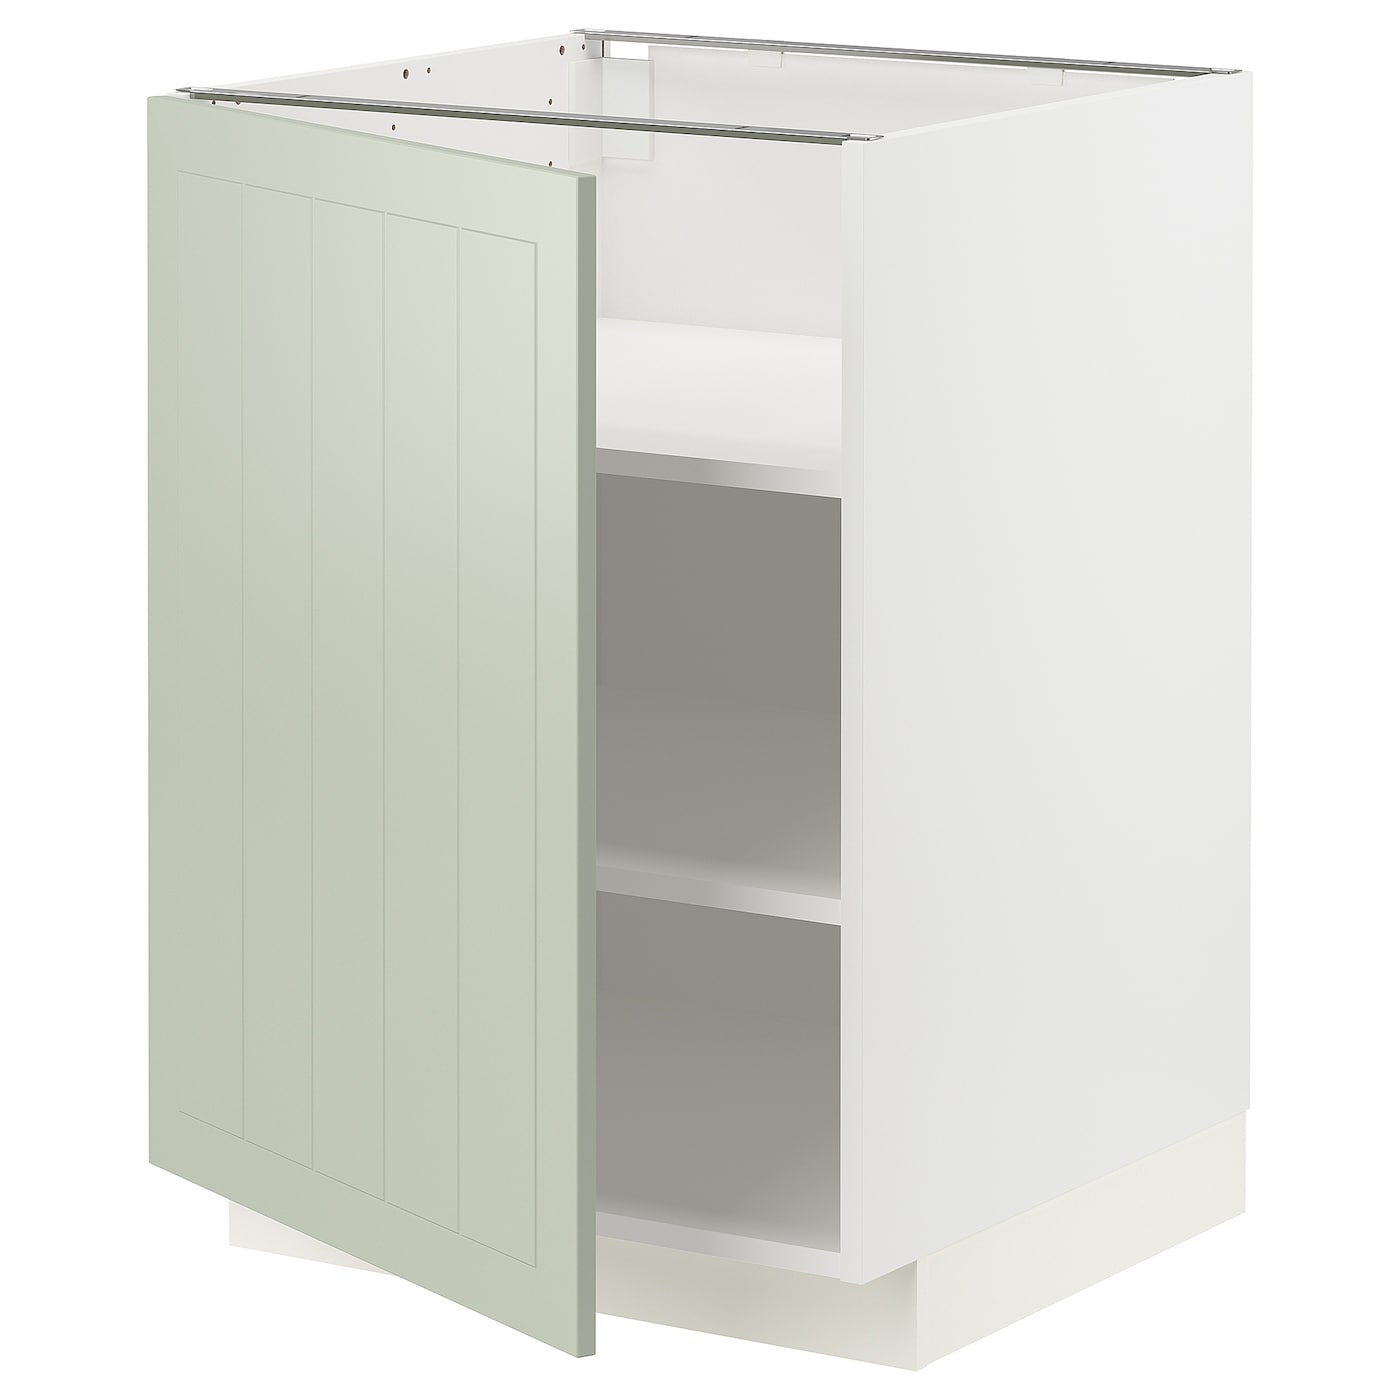 Напольный кухонный шкаф  - IKEA METOD, 88x62x60см, белый/светло-зеленый, МЕТОД ИКЕА